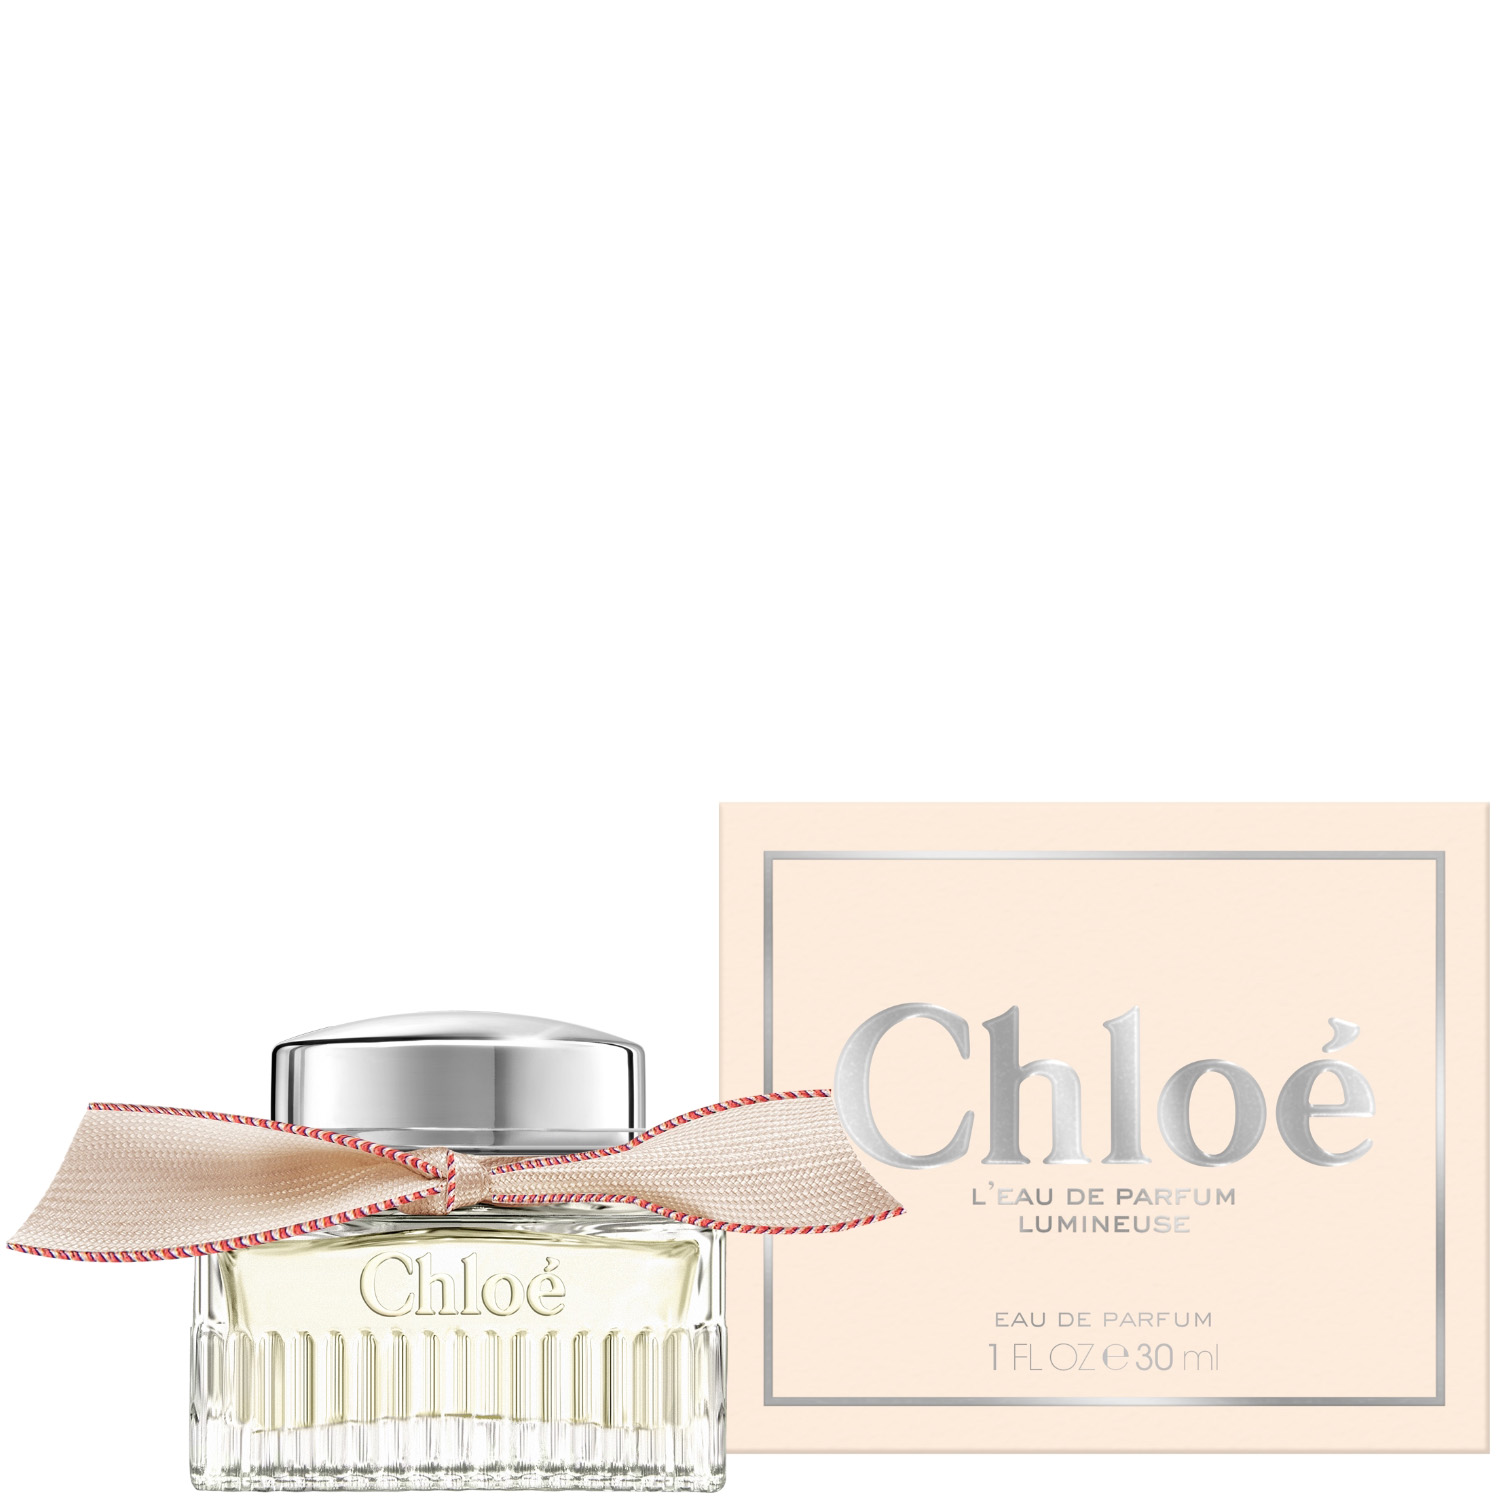 Chloé L‘Eau de Parfum Lumineuse 30ml